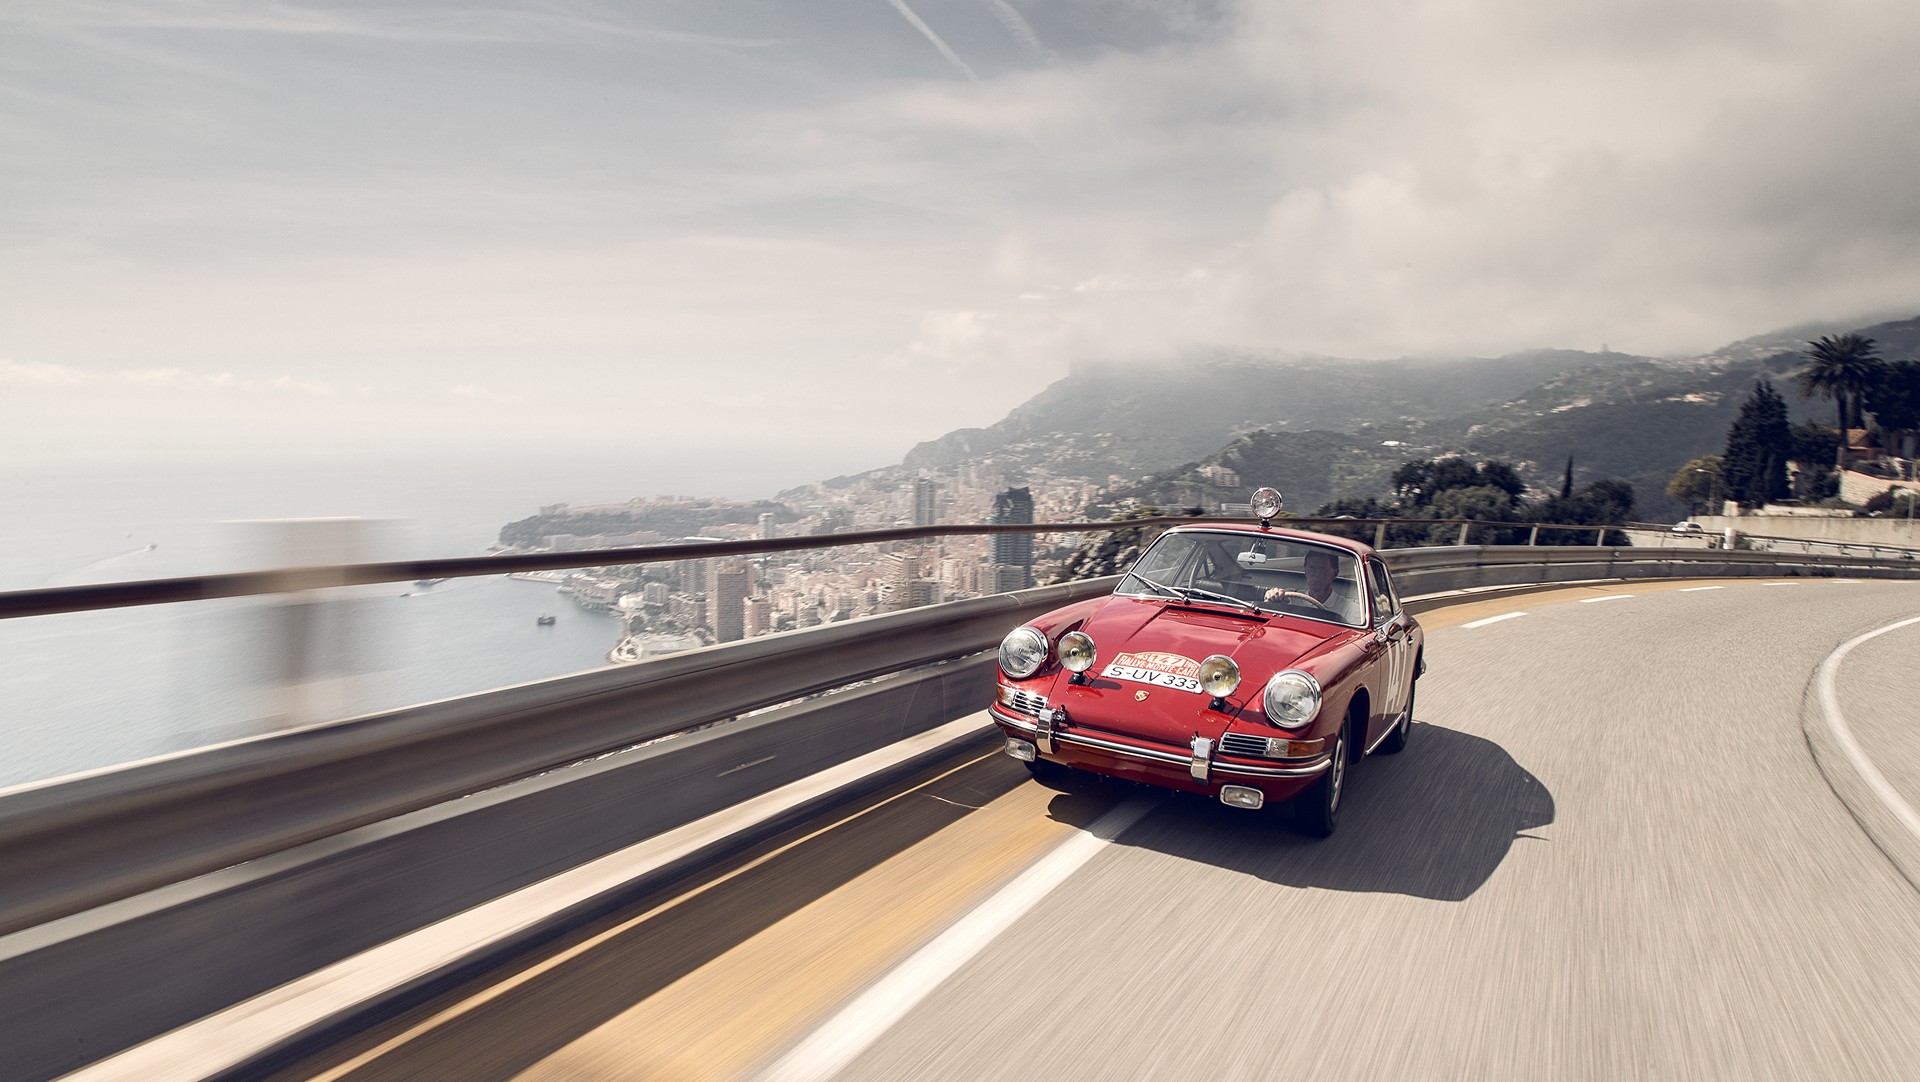 Porsche Monte Carlo 911, 1965, Côte d'Azur, France, 2015 © Dr. Ing. h.c. F. Porsche AG